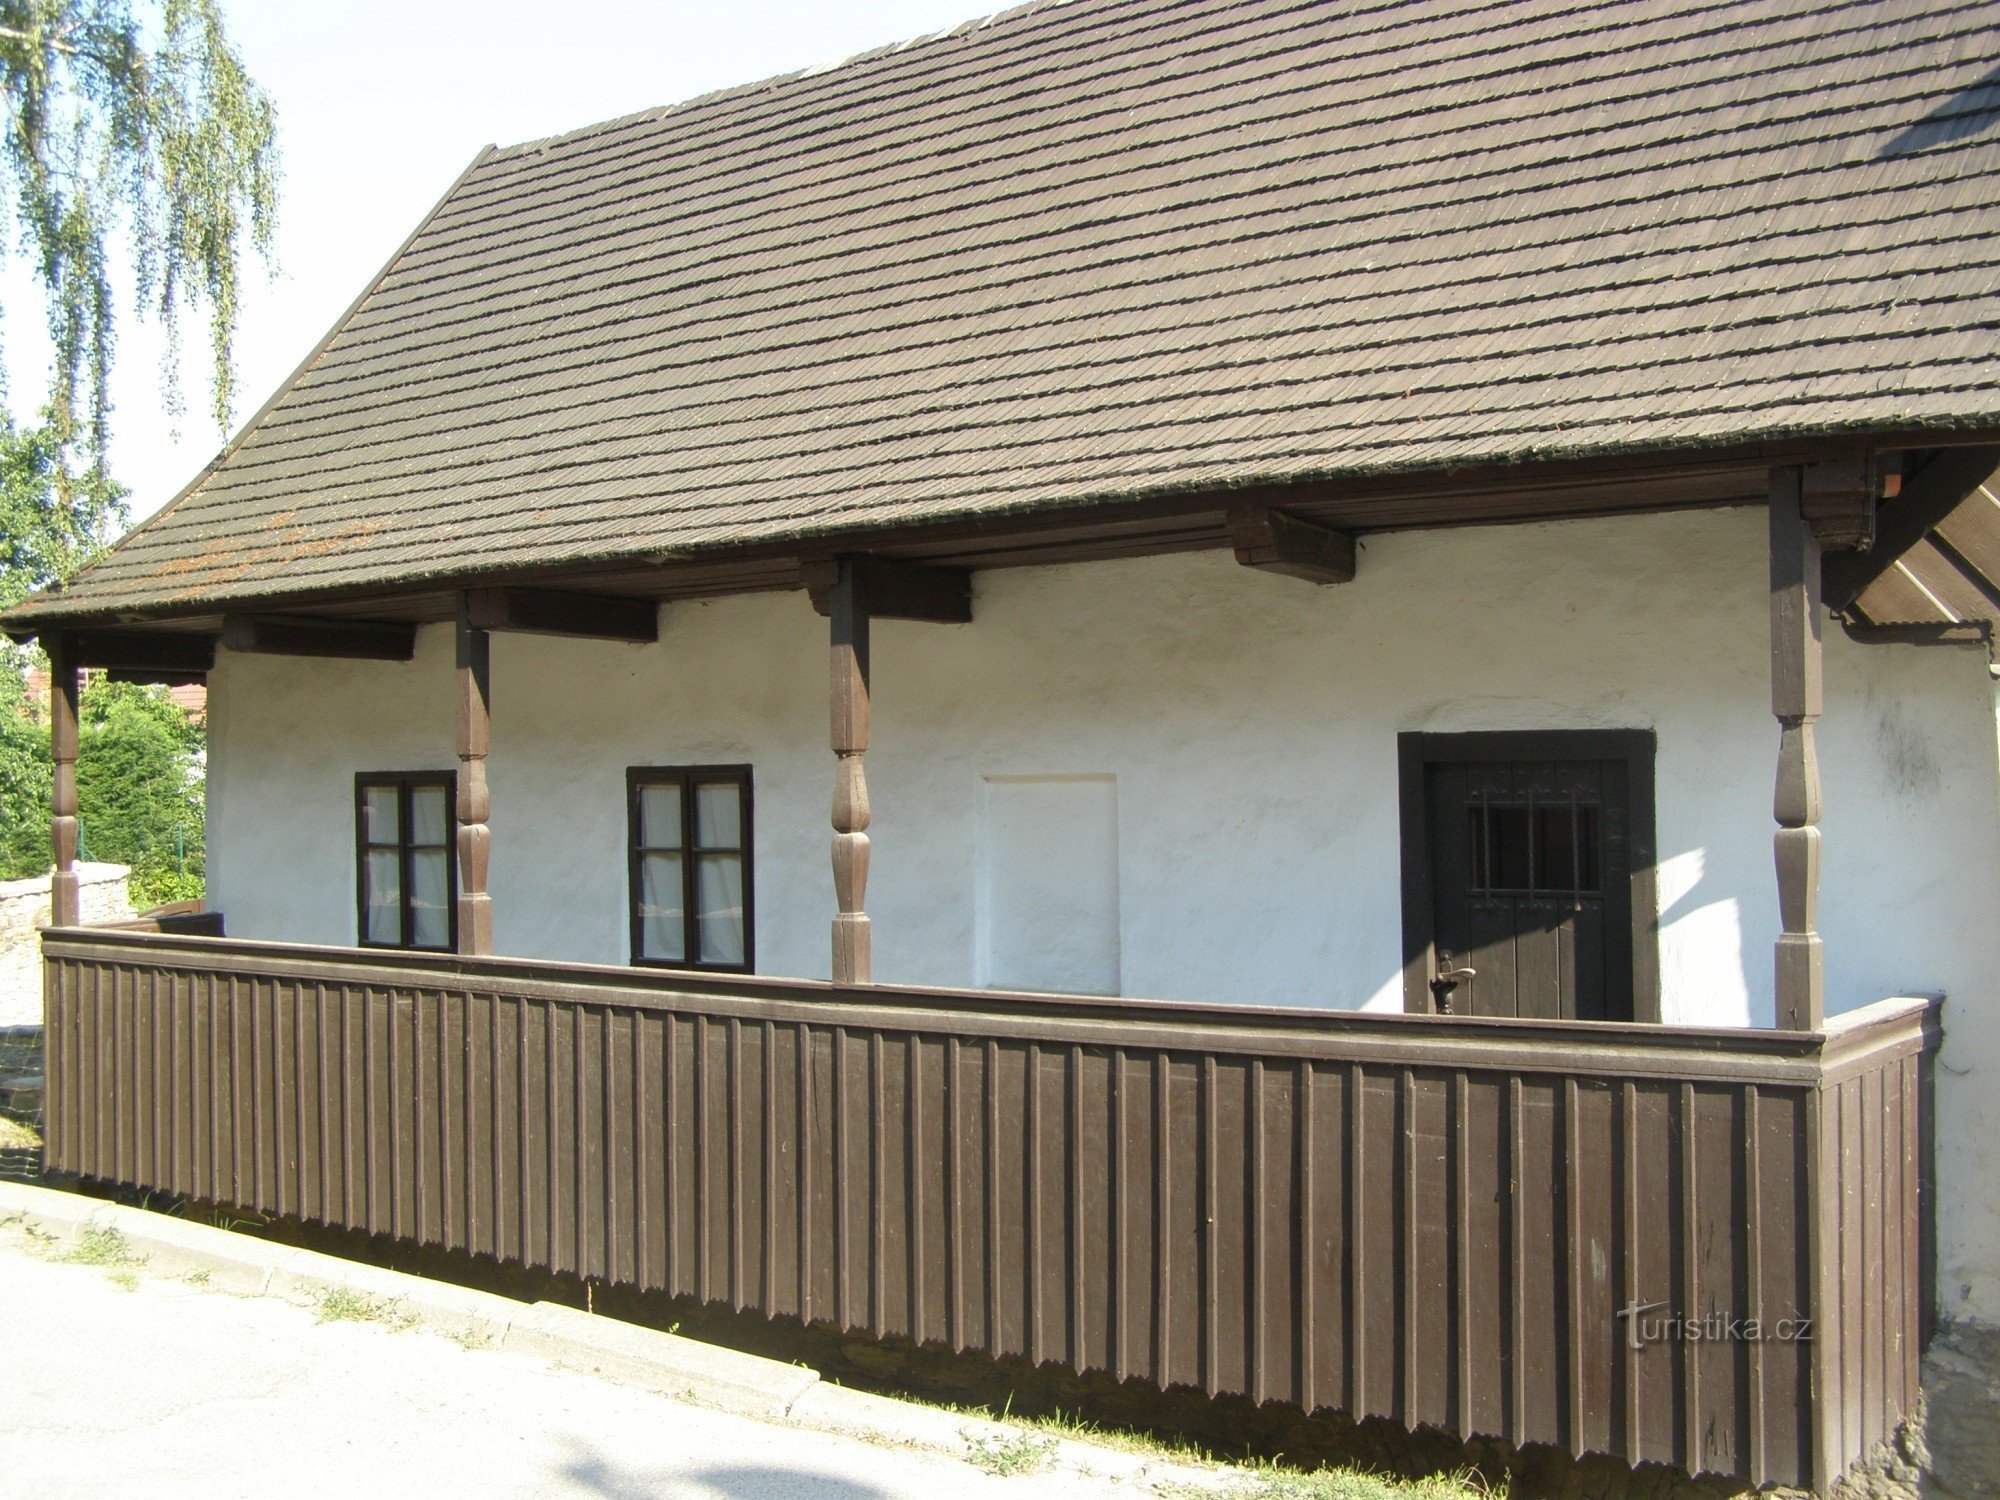 Dobruška - locul de naștere al lui FLVěk (Heka)